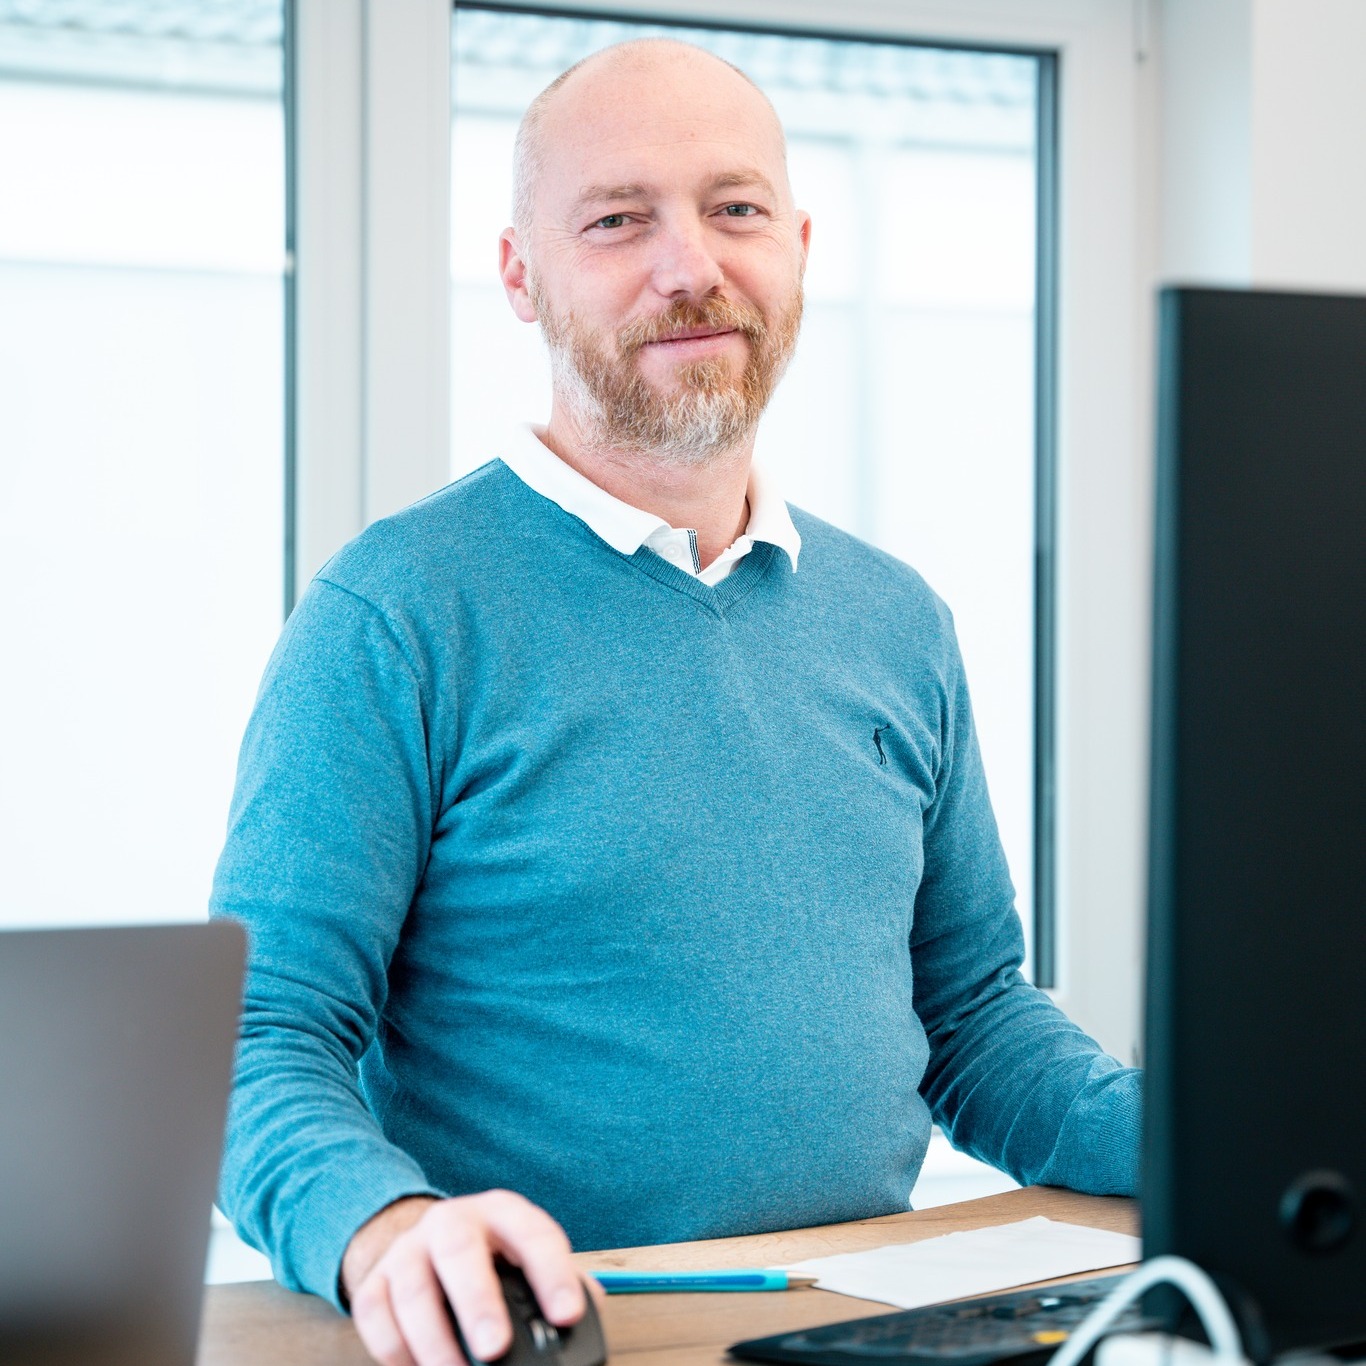 Geschäftsführer Christian Weber am Schreibtisch, konzentriert auf seine Arbeit am Computer in einem modernen Büro.